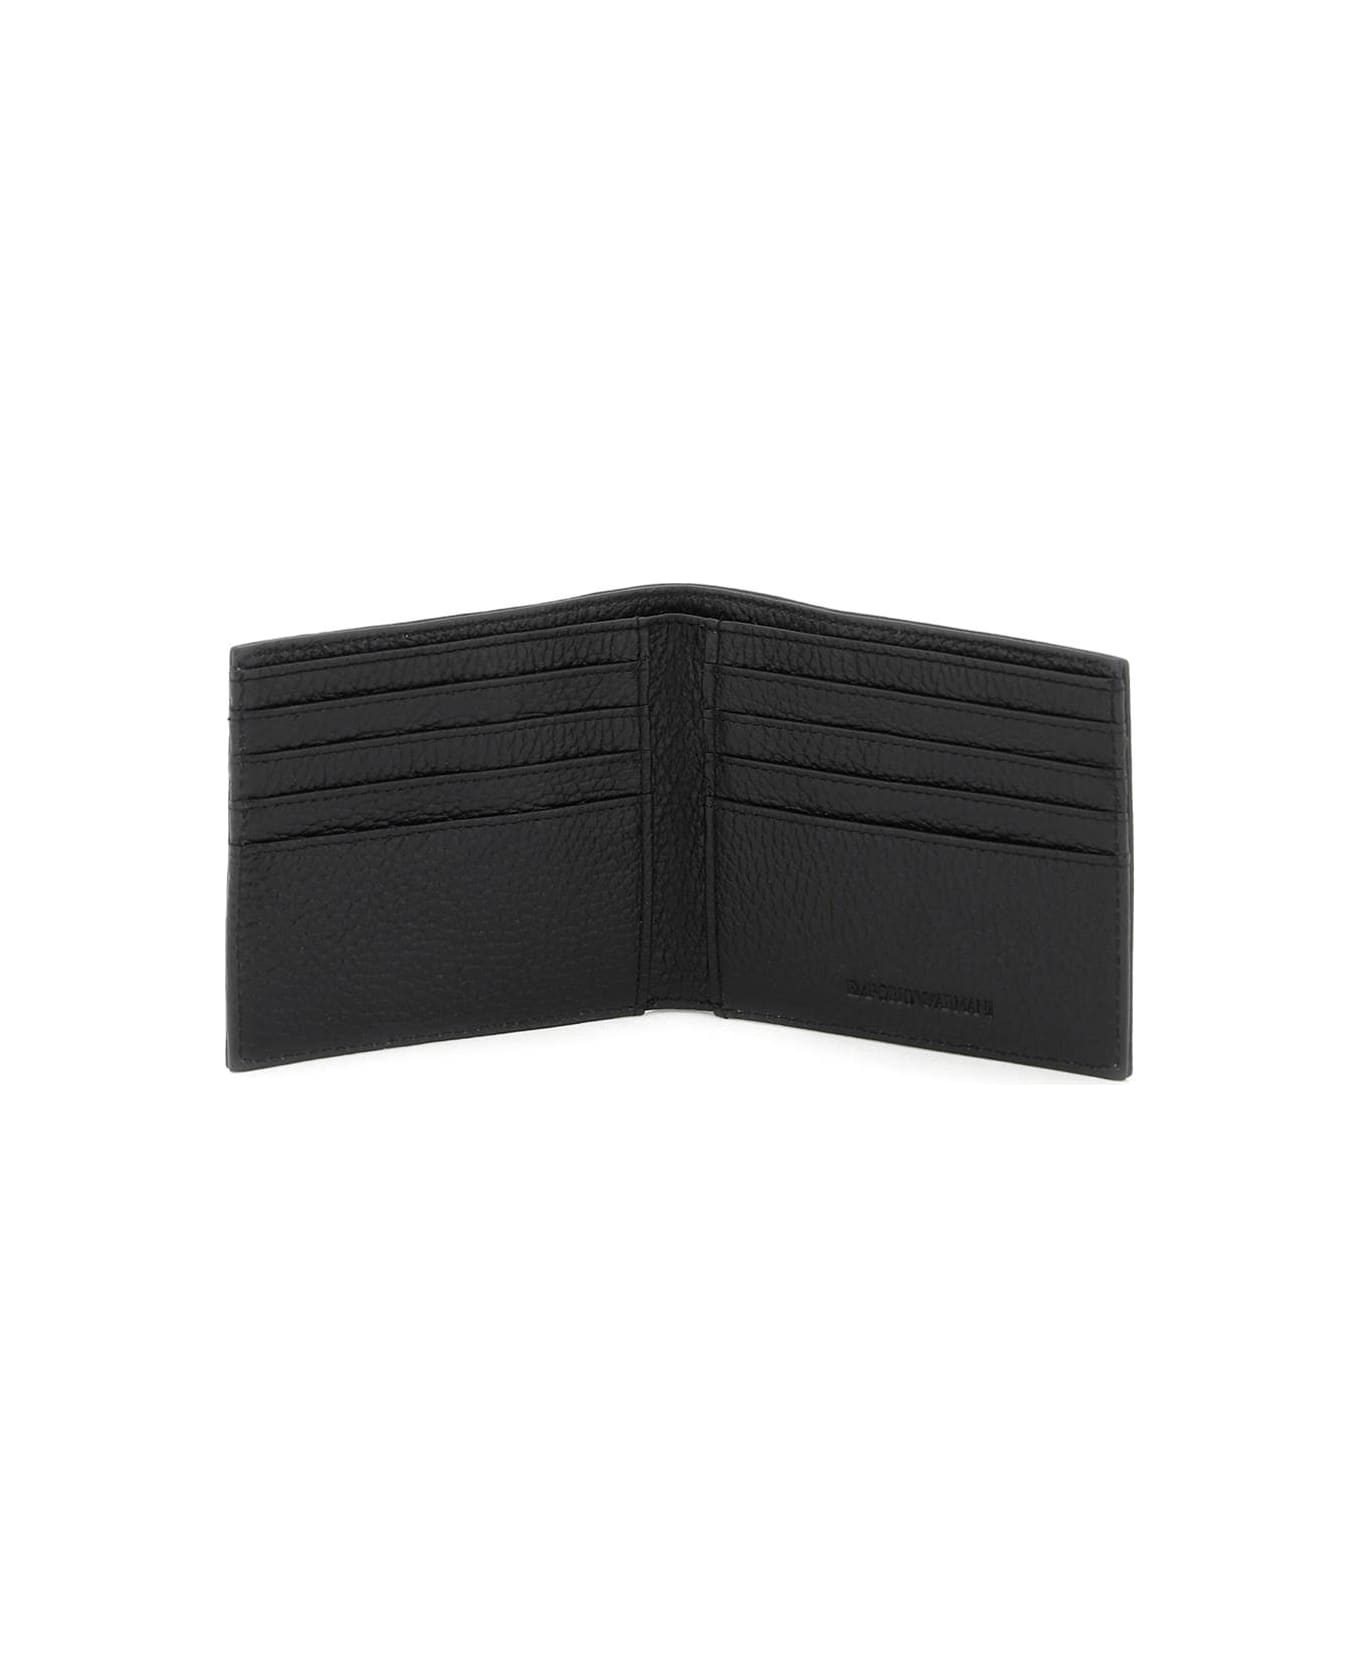 Emporio Armani Grained Leather Wallet - NERO (Black)